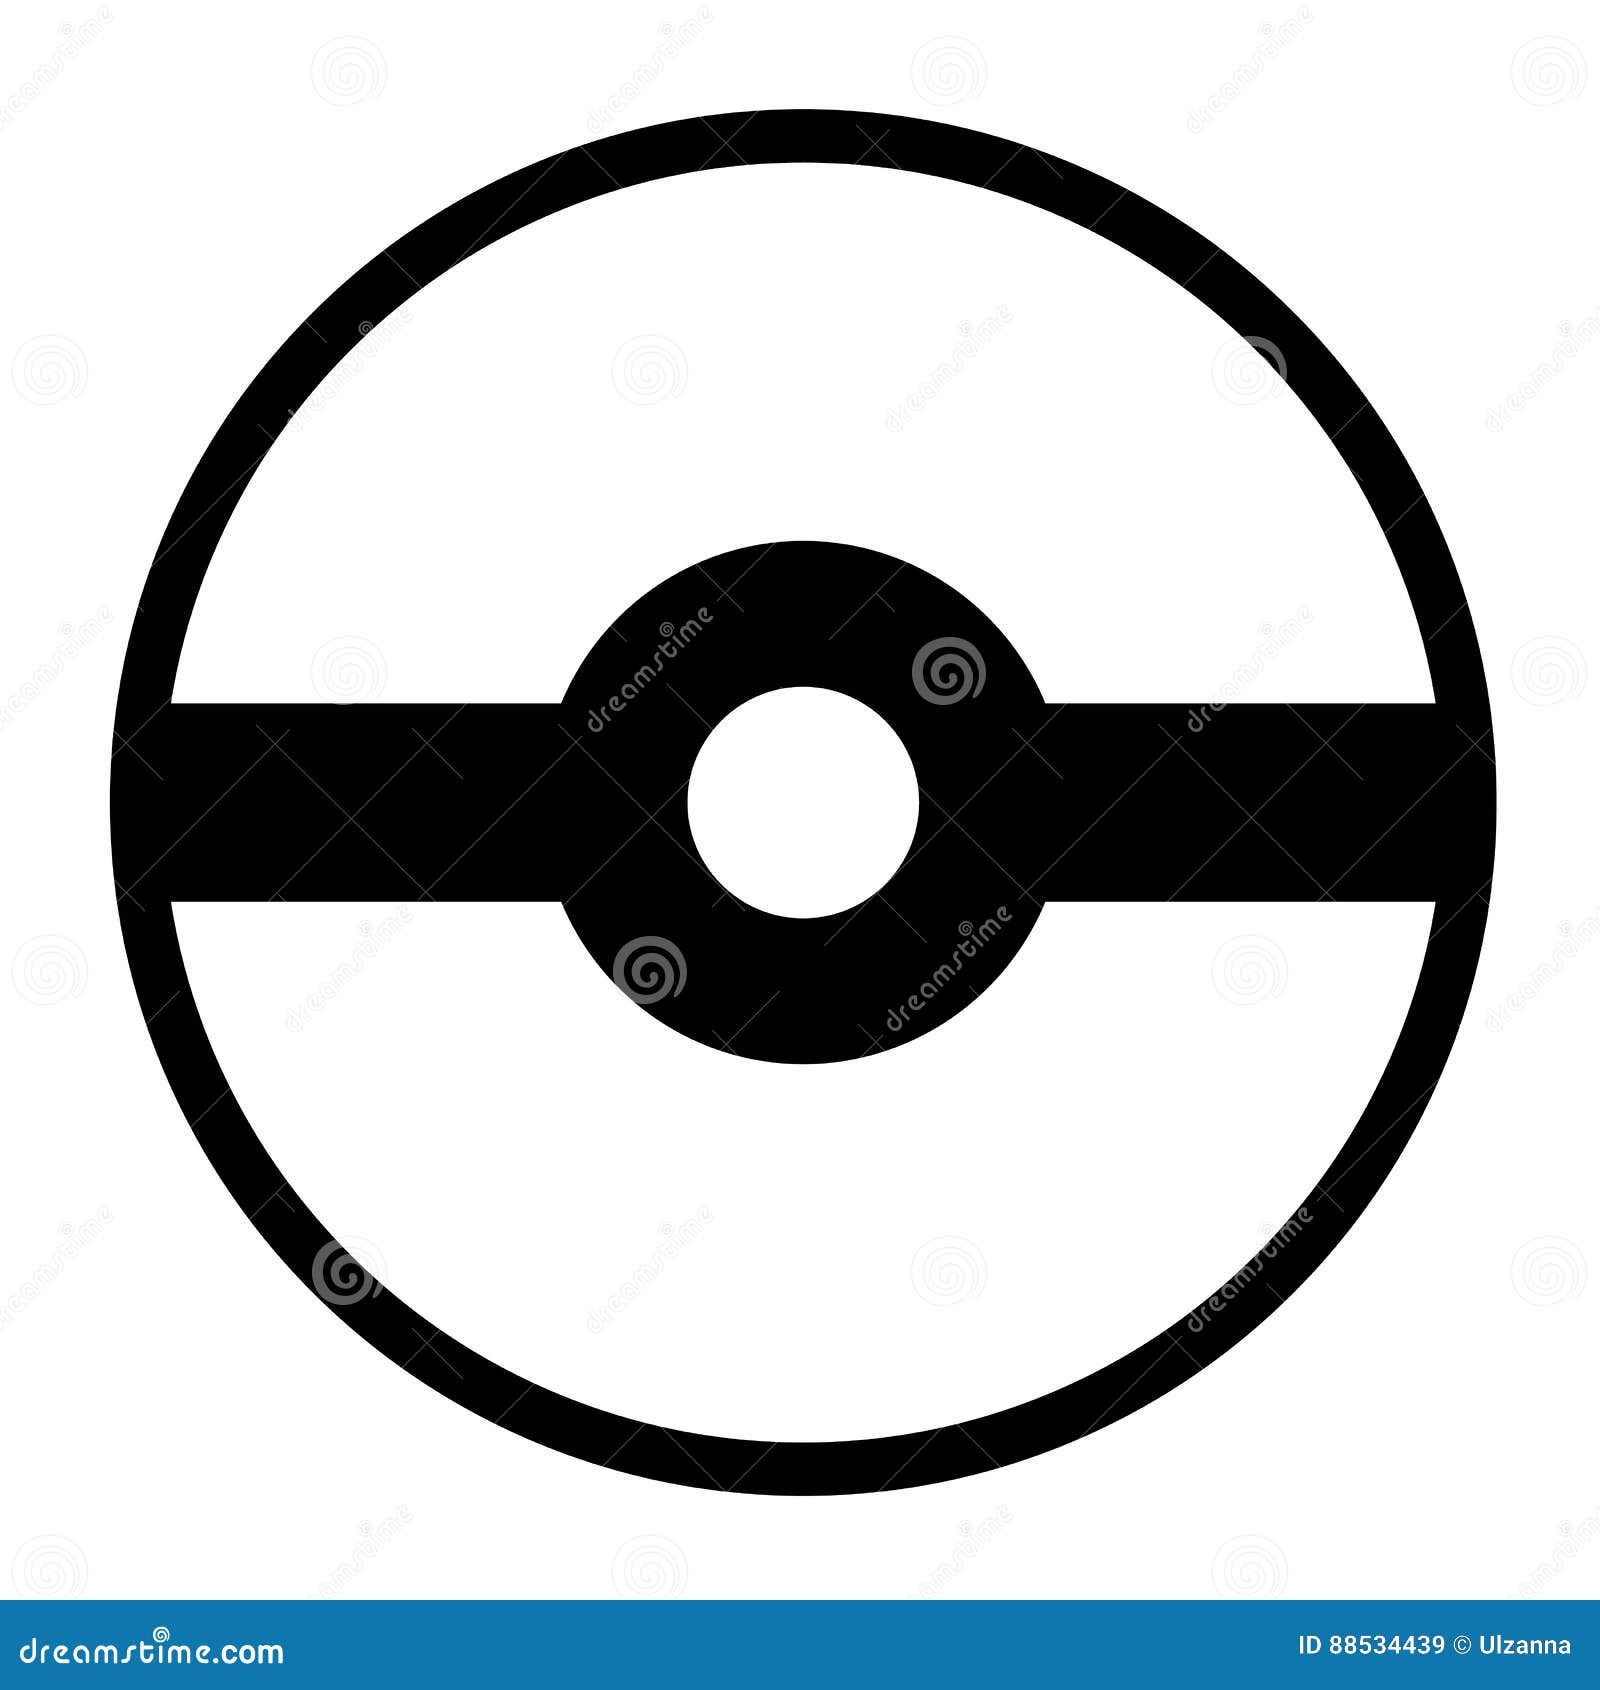 Pokeball Logo Isolated On White Background Editorial Stock Image Illustration Of Poke Icon